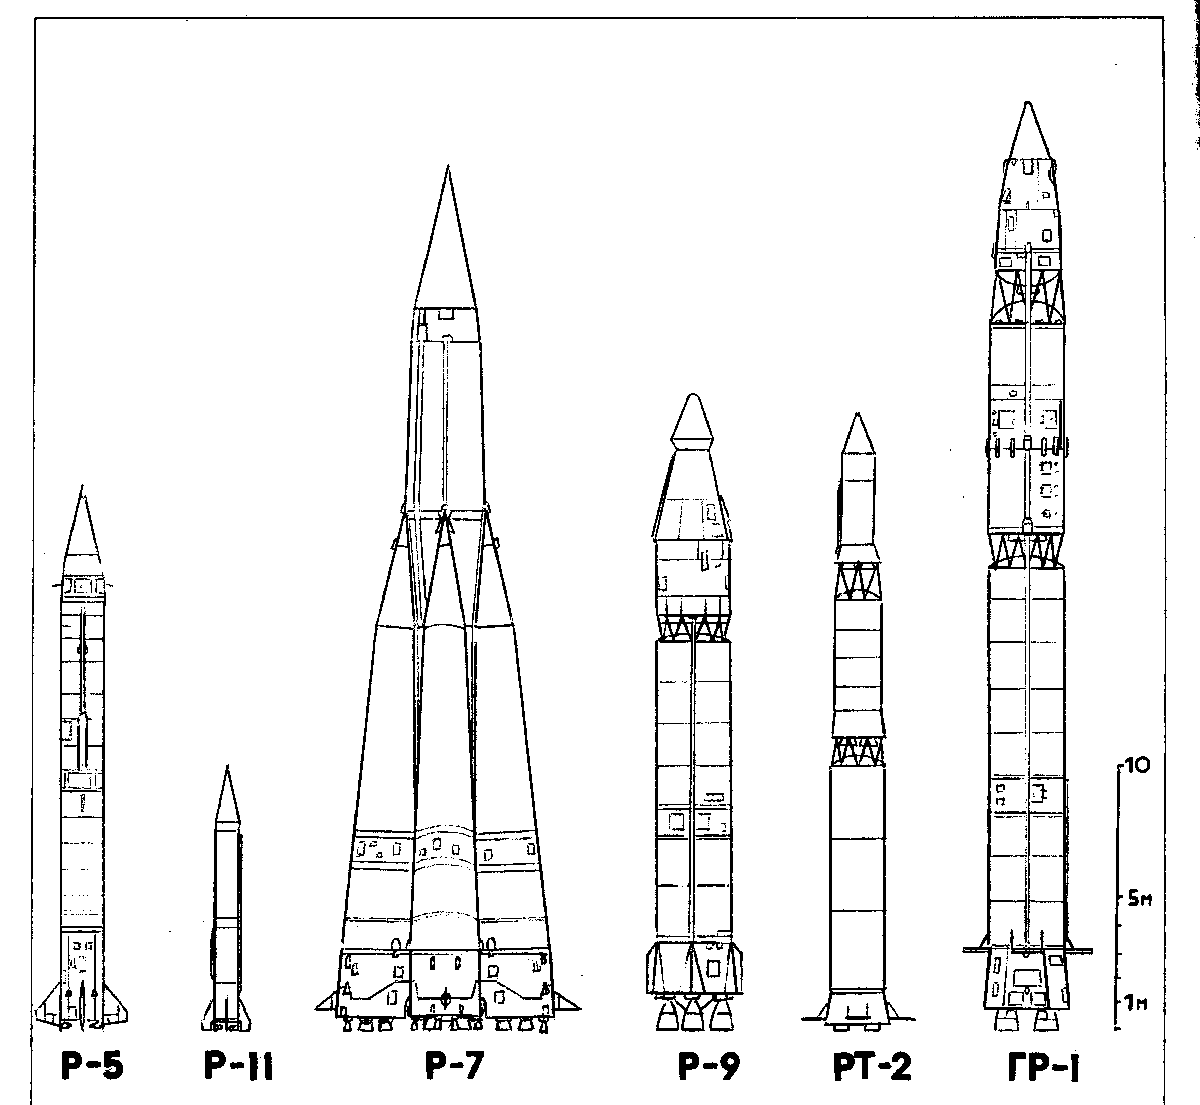 Крылатая ракета кср-5 (д-5).